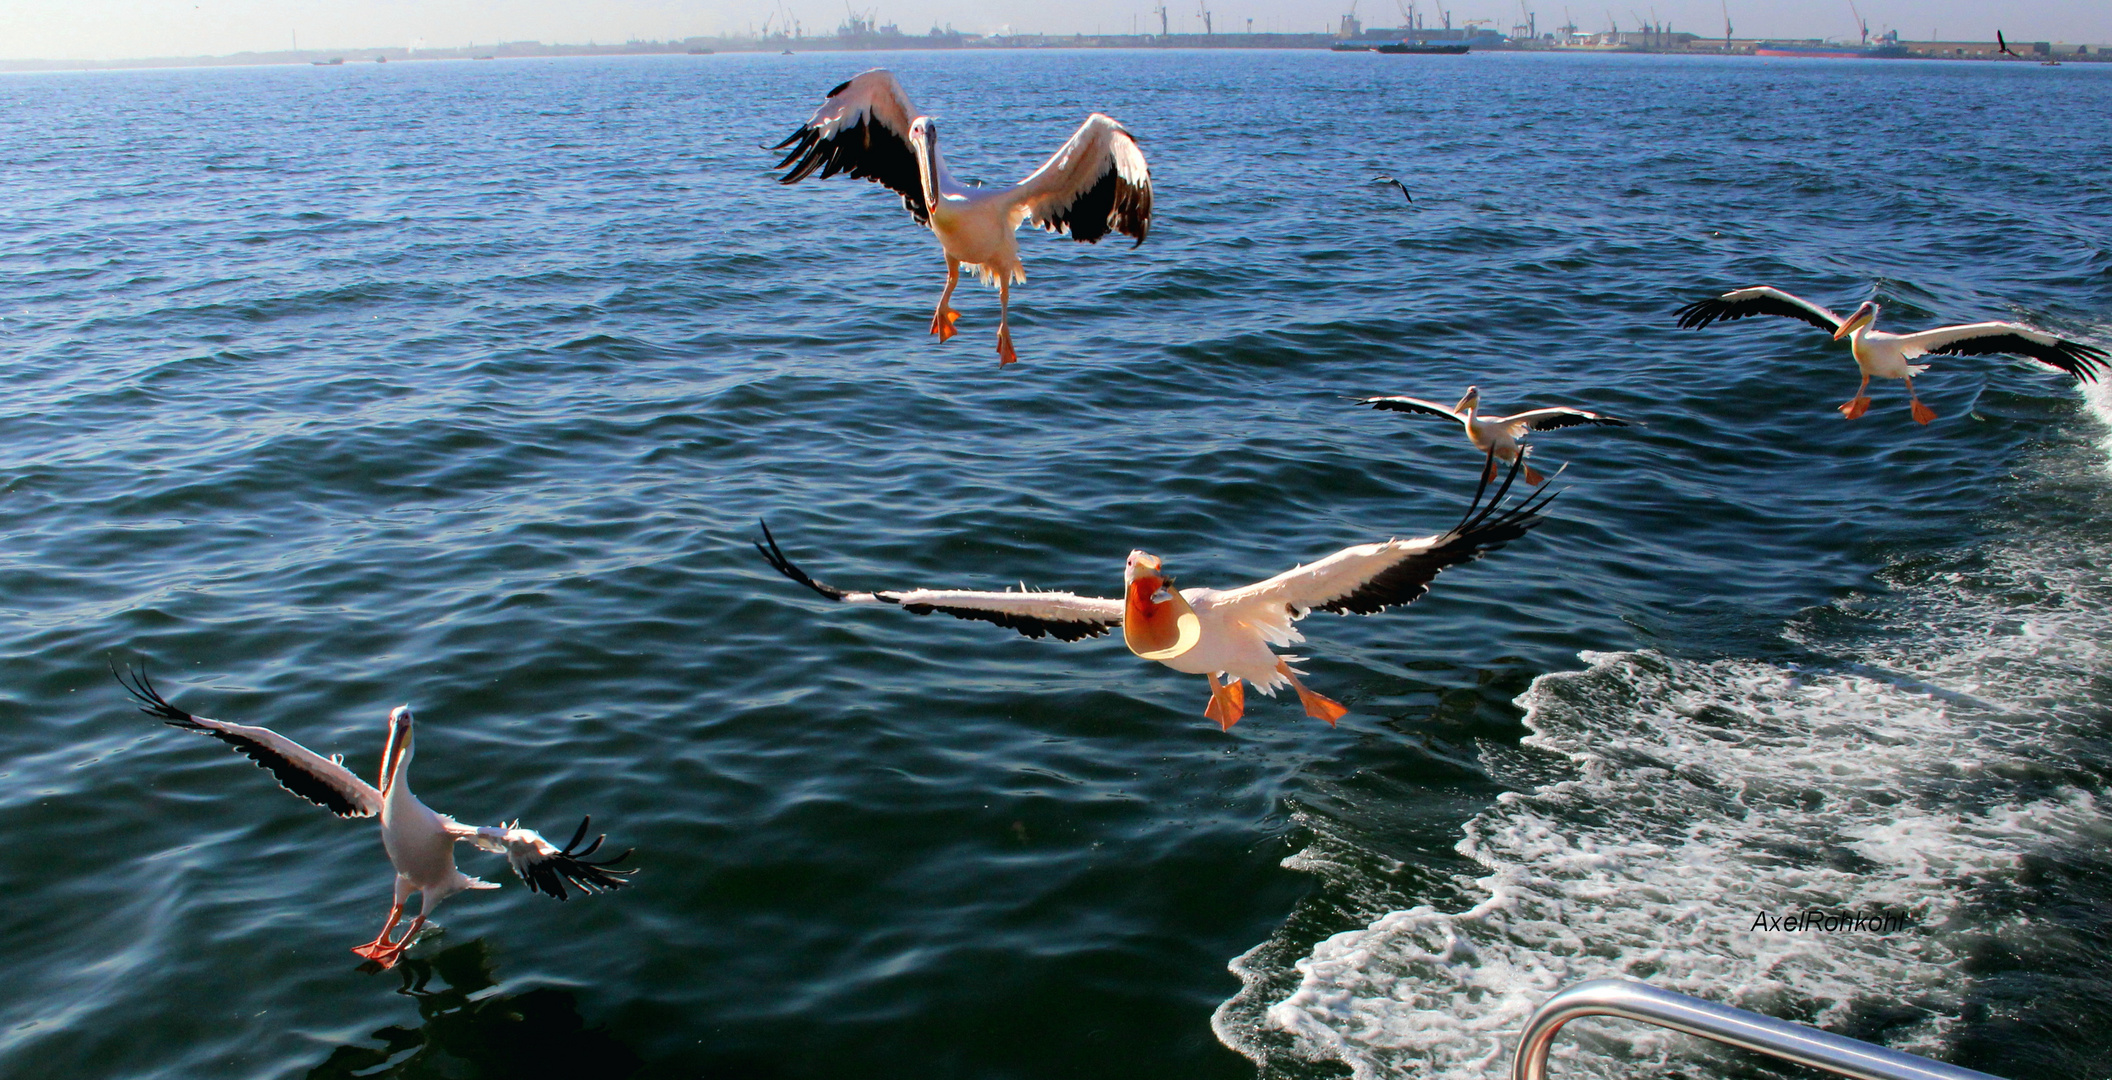 Pelikan auf Fischfang